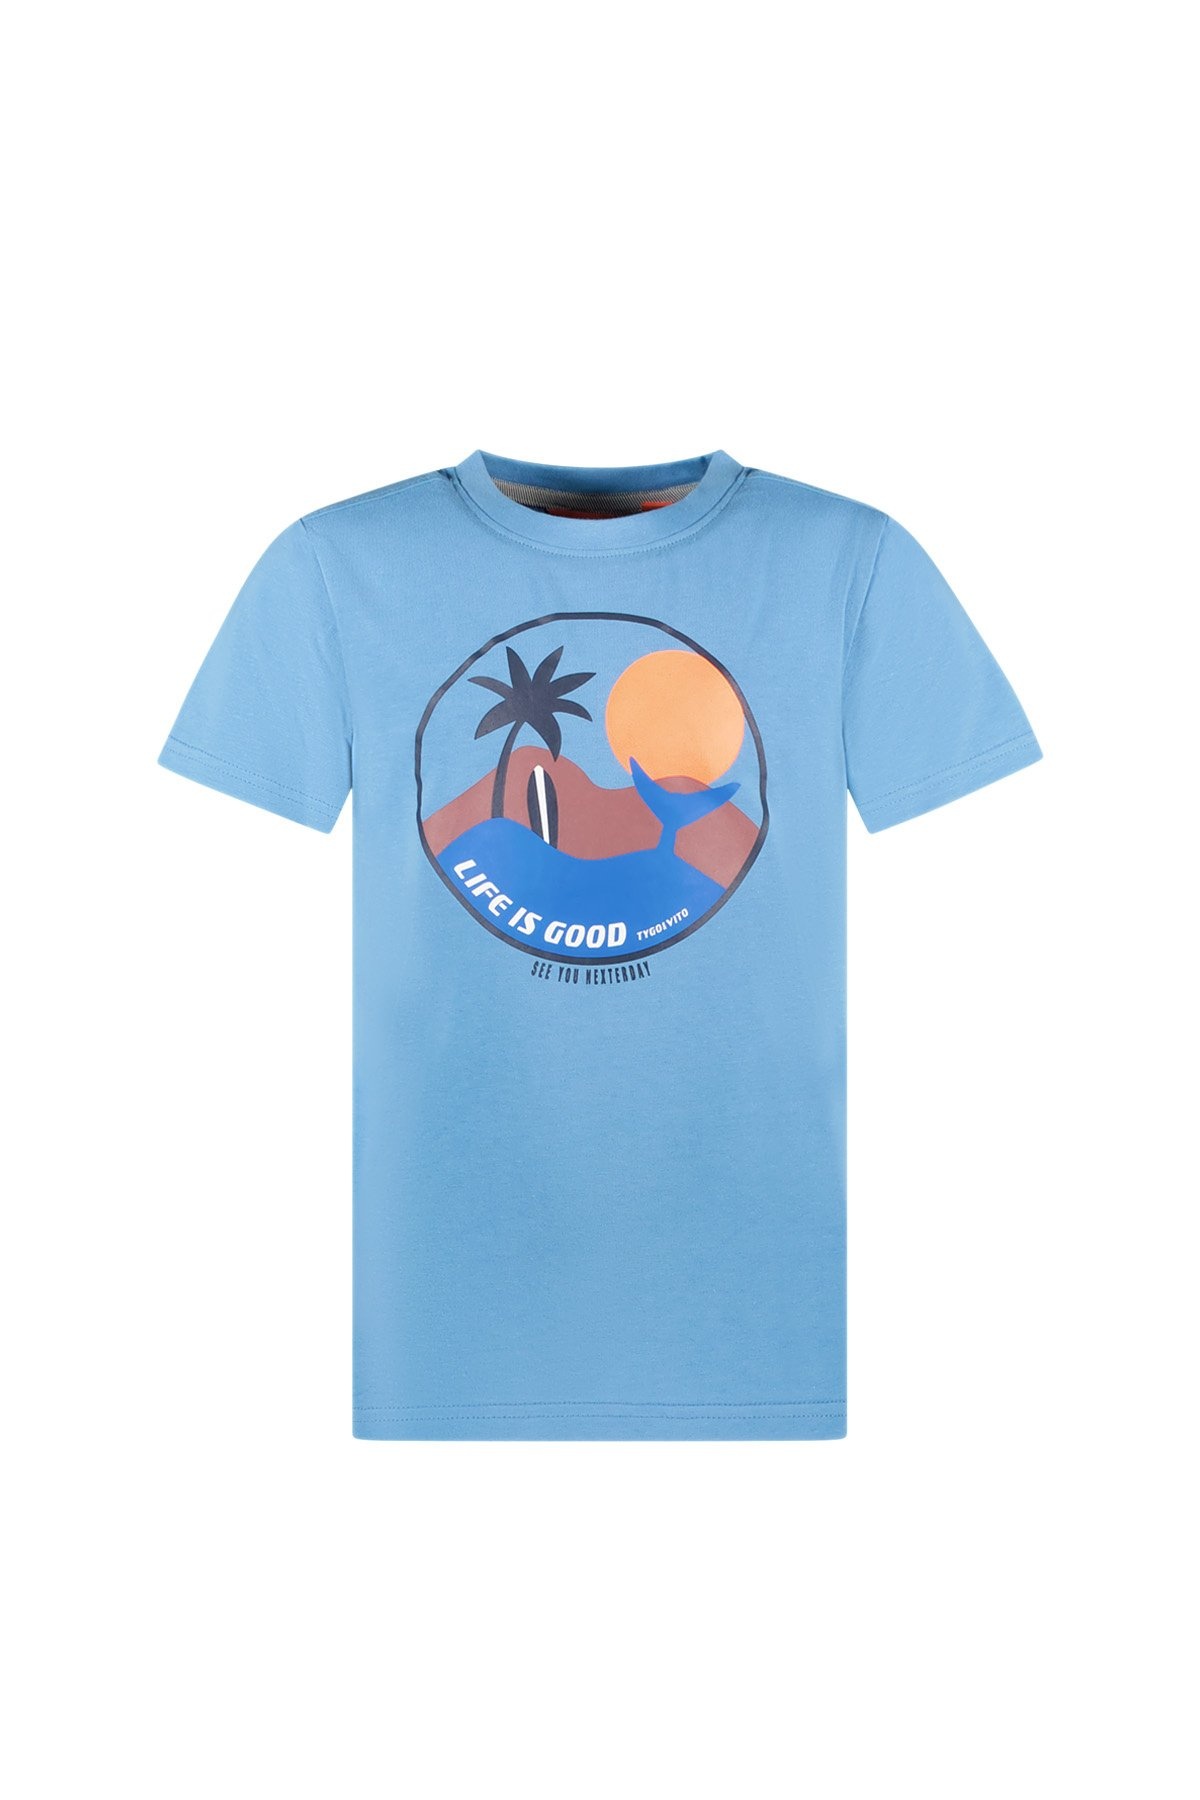 TYGO & vito X403-6423 Jongens T-shirt - Bright Blue - Maat 134-140